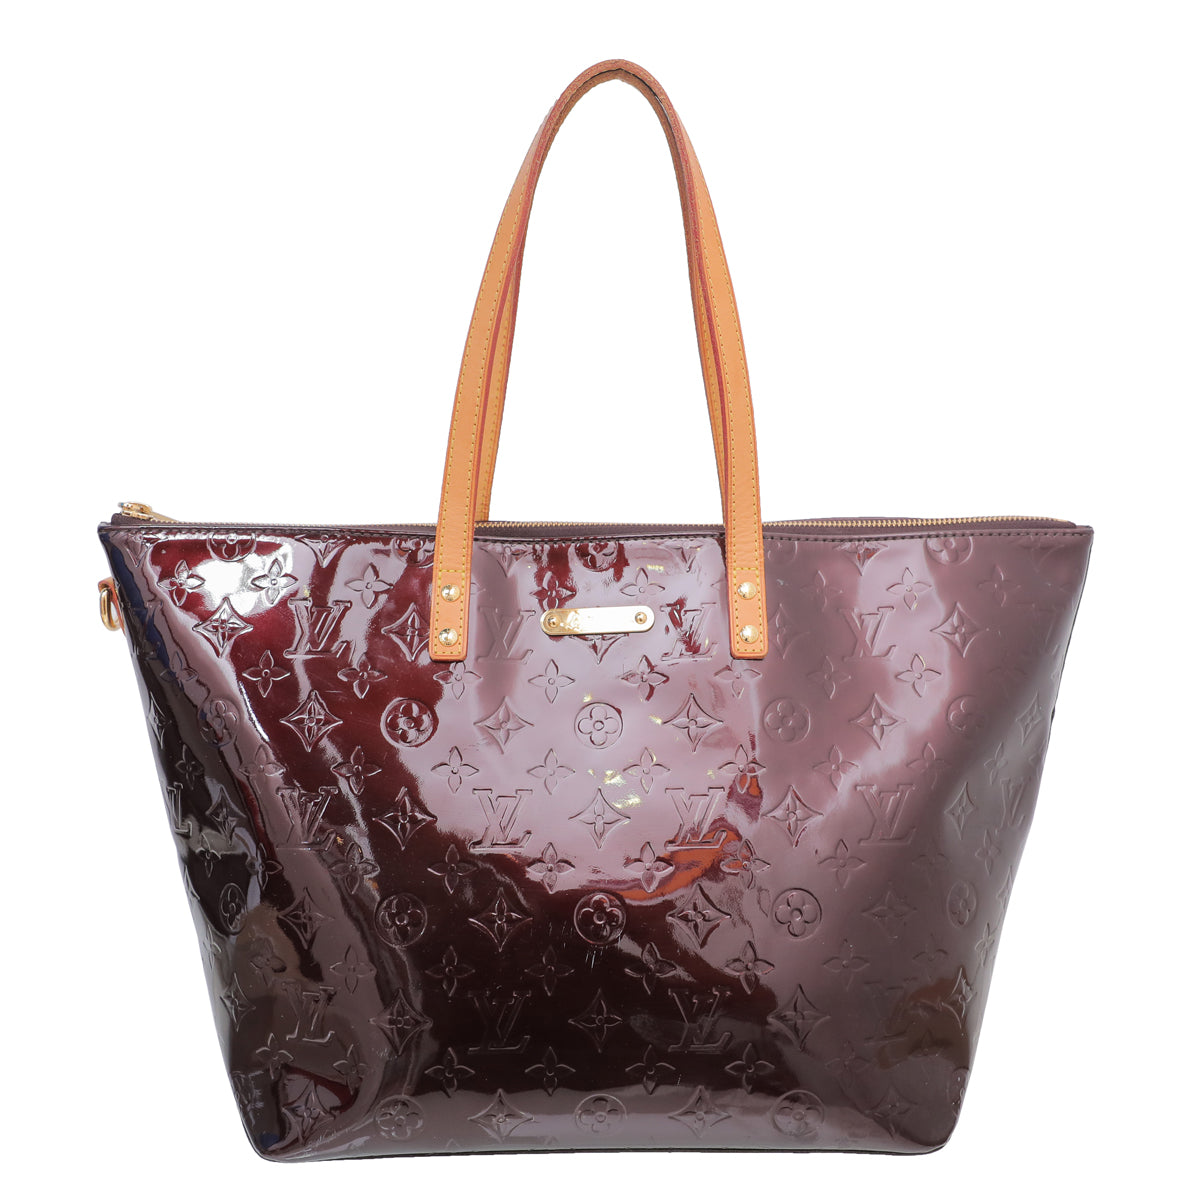 Shop for Louis Vuitton Amarante Vernis Leather Bellevue GM Bag